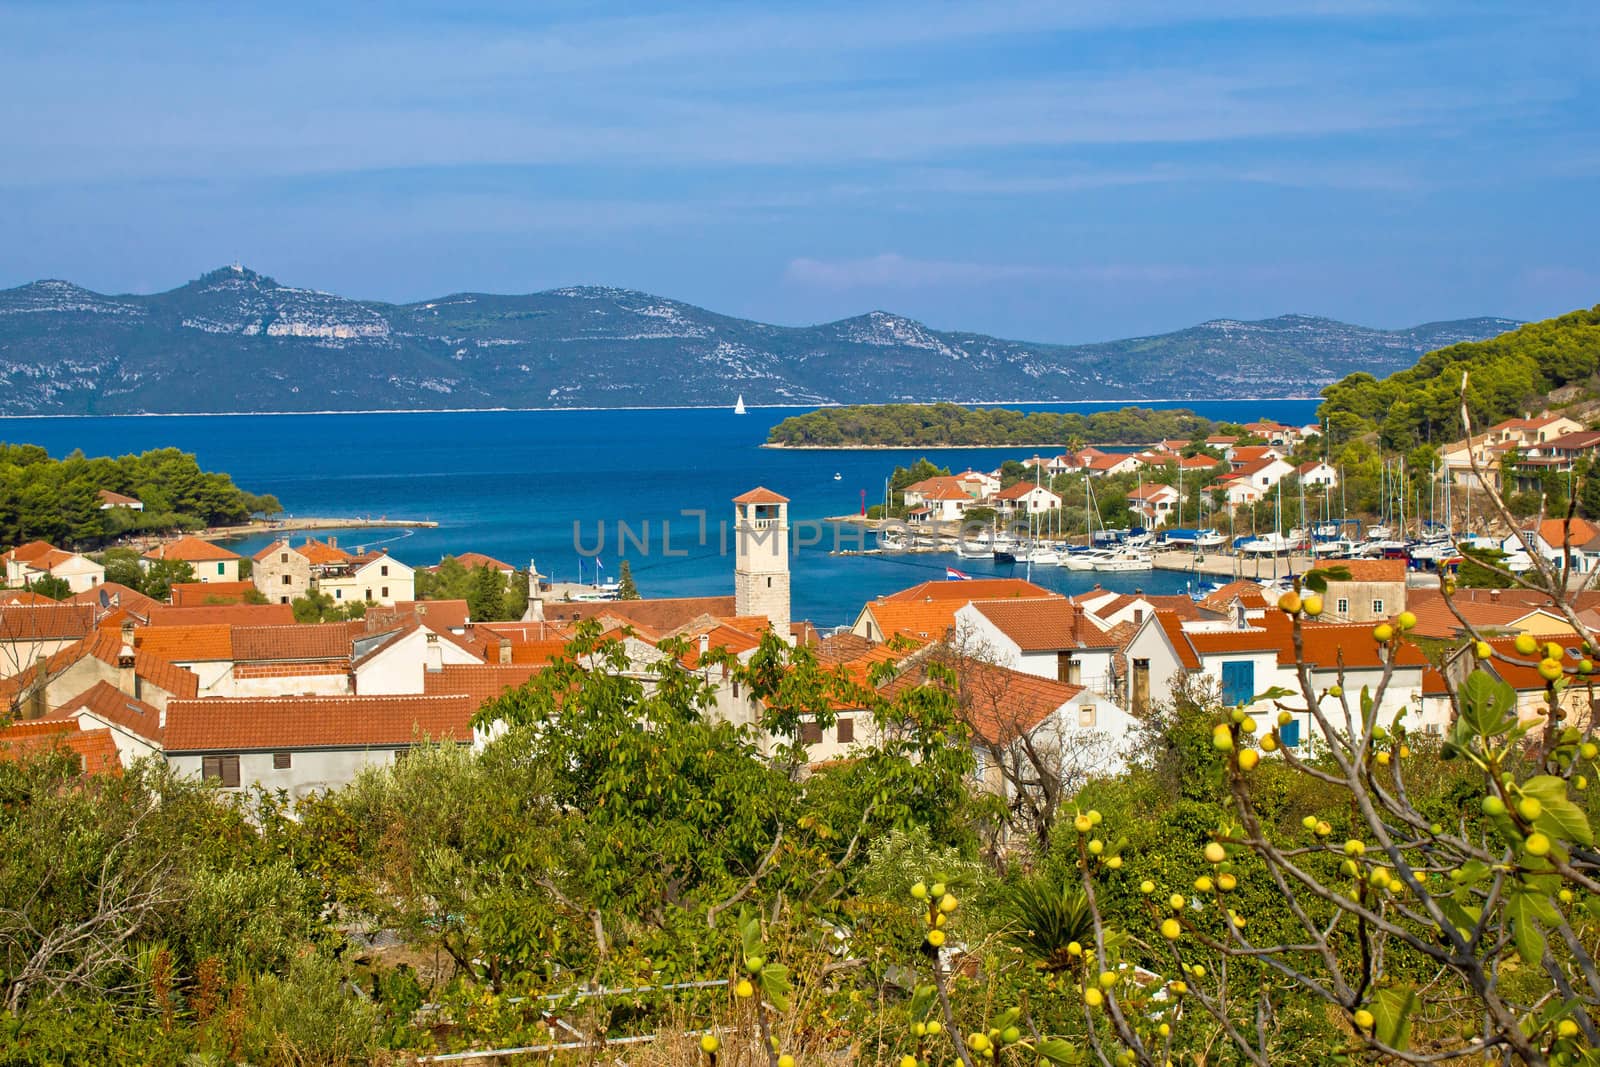 Veli Iz adriatic island view by xbrchx